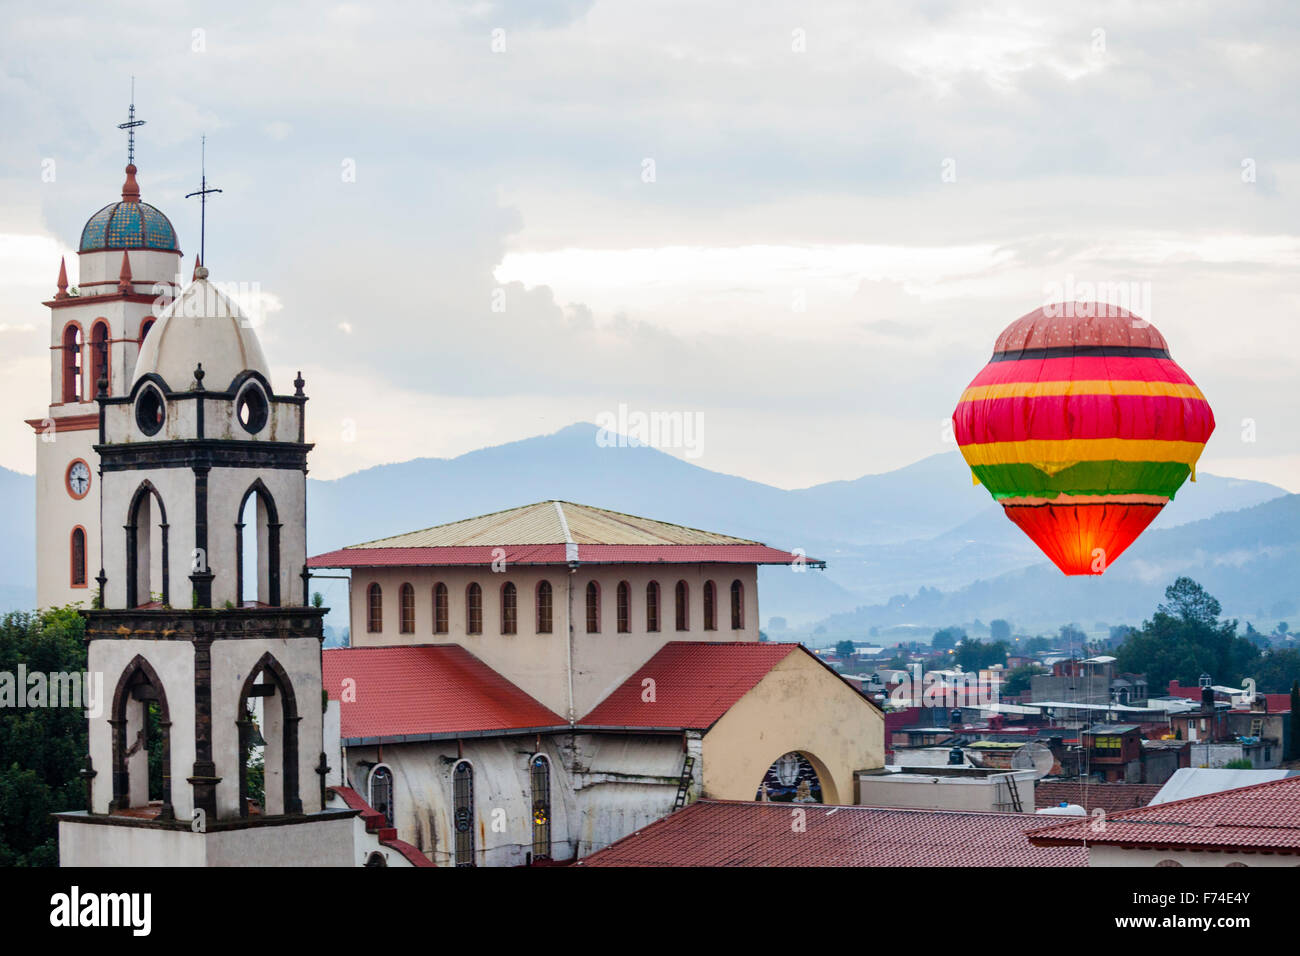 Une grande lanterne ciel flotte vers le haut plus de Paracho, Michoacan, Mexique au cours de l'assemblée annuelle de Cantoya Globos festival. Banque D'Images